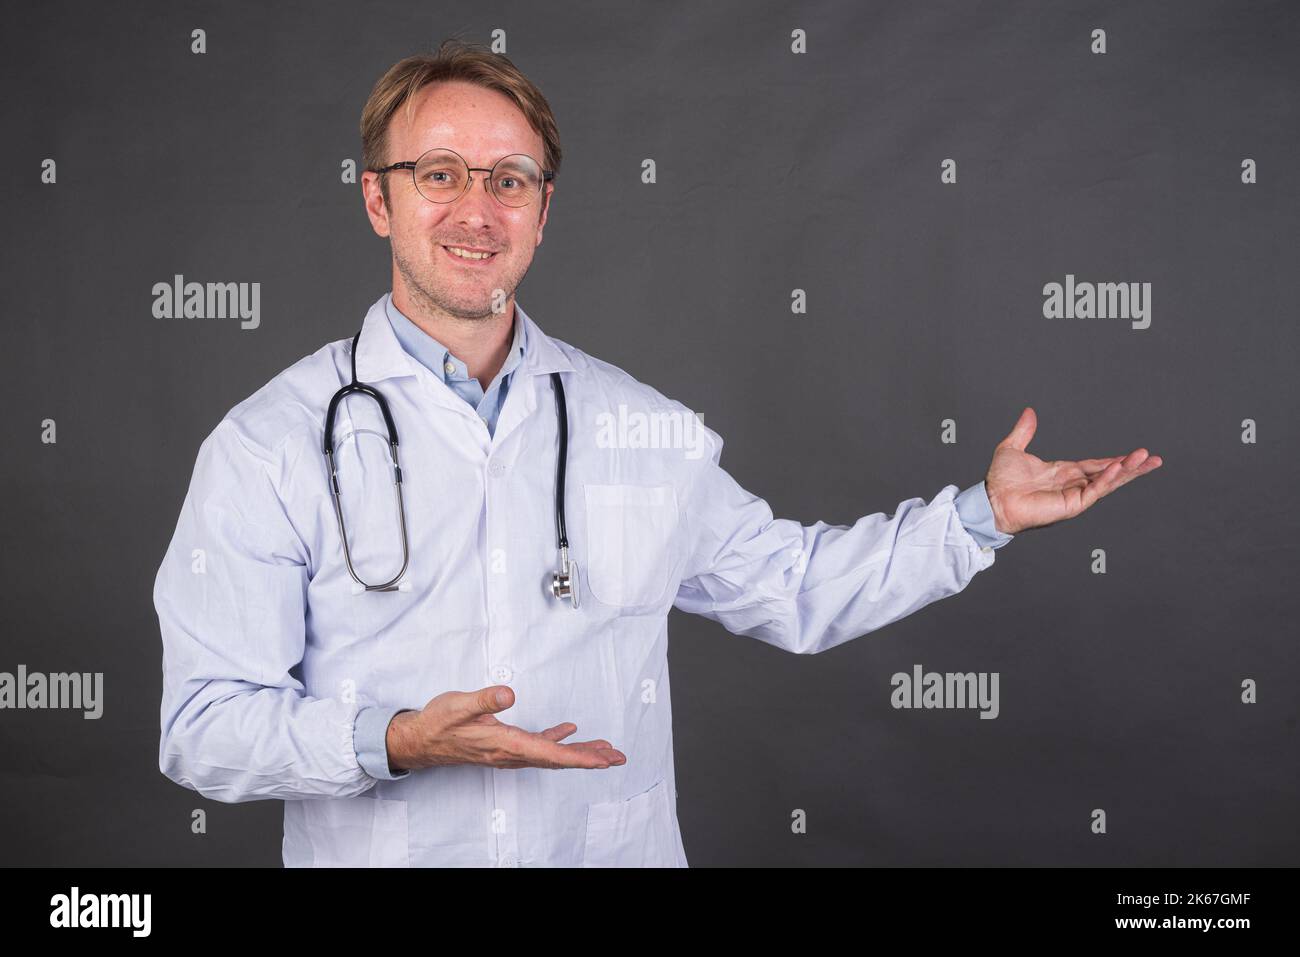 Homme heureux médecin avec stéthoscope sur le cou dans un pelage médical gestant sur le côté contre fond gris Banque D'Images